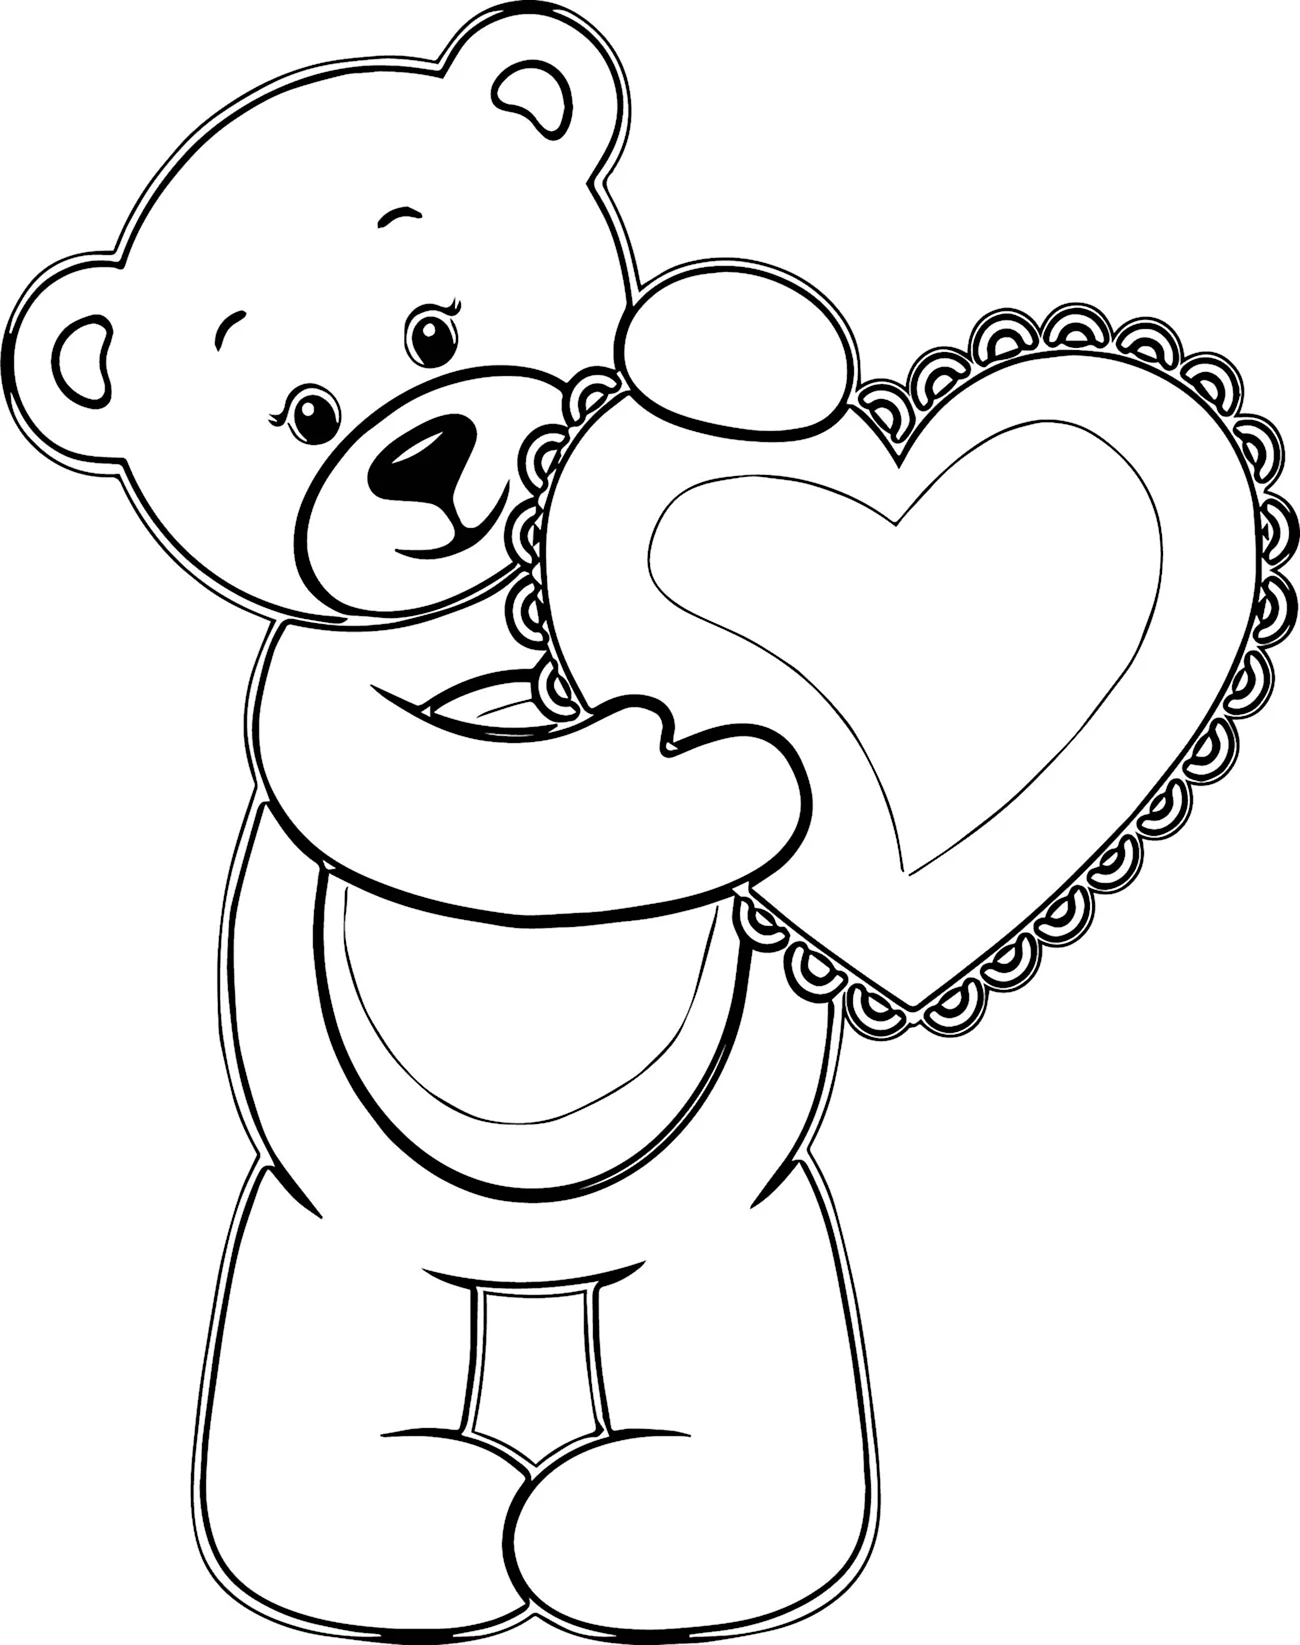 Раскраска Медвежонок с сердечком. Для срисовки